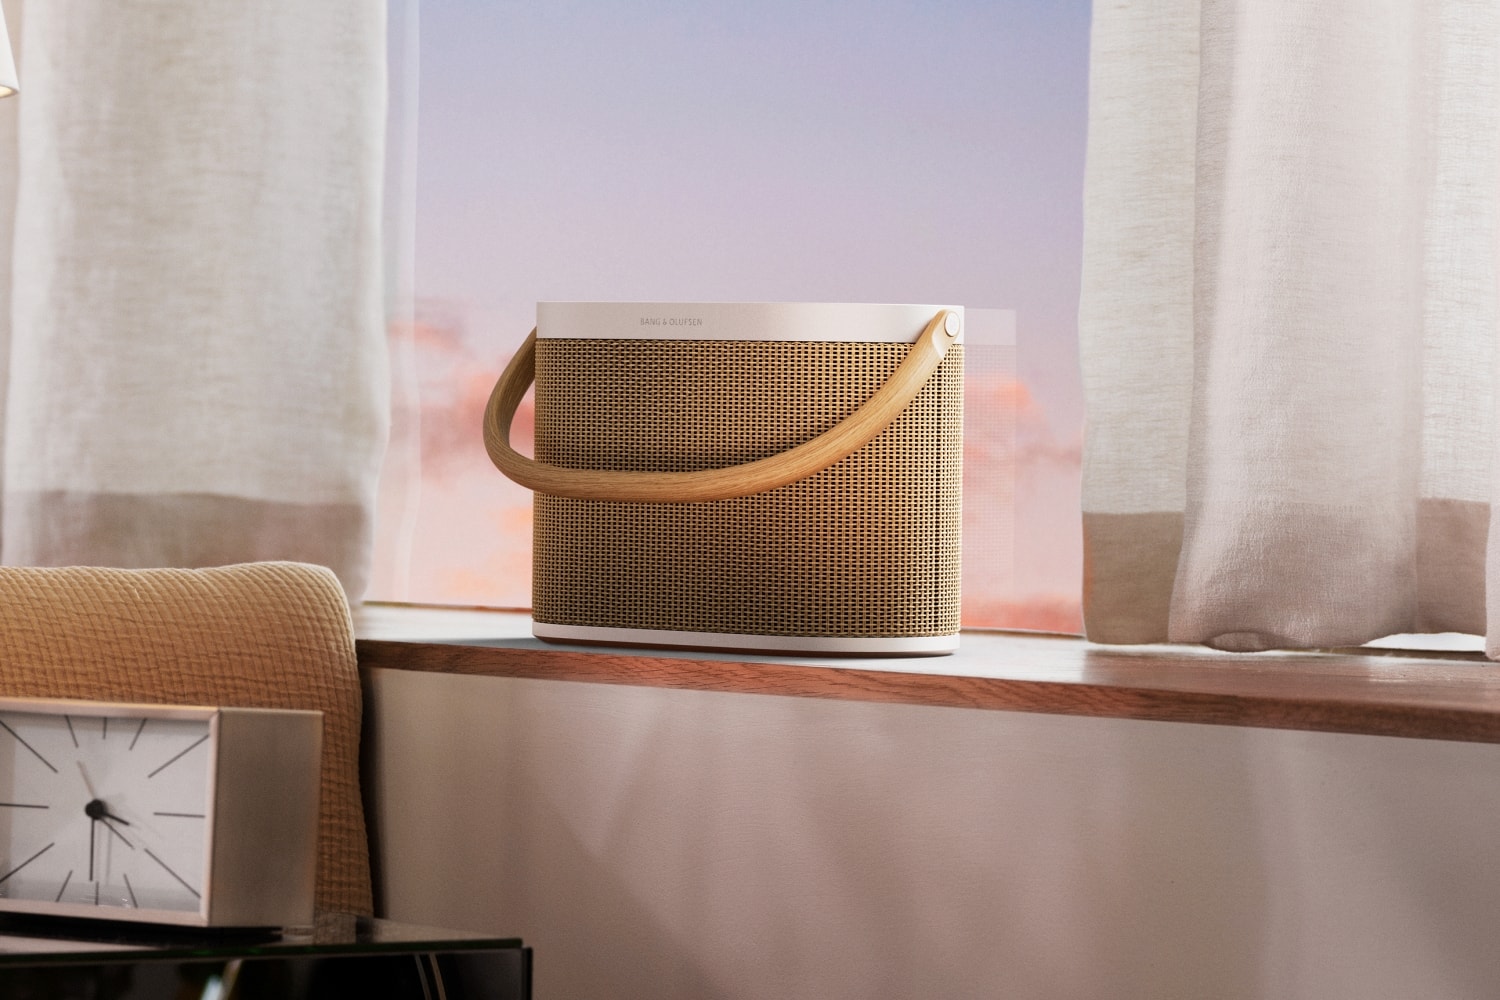 뱅앤올룹슨, 하이엔드 포터블 스피커 ‘베오사운드 A5’ 출시 Bang & Olufsen beosound portable speaker release